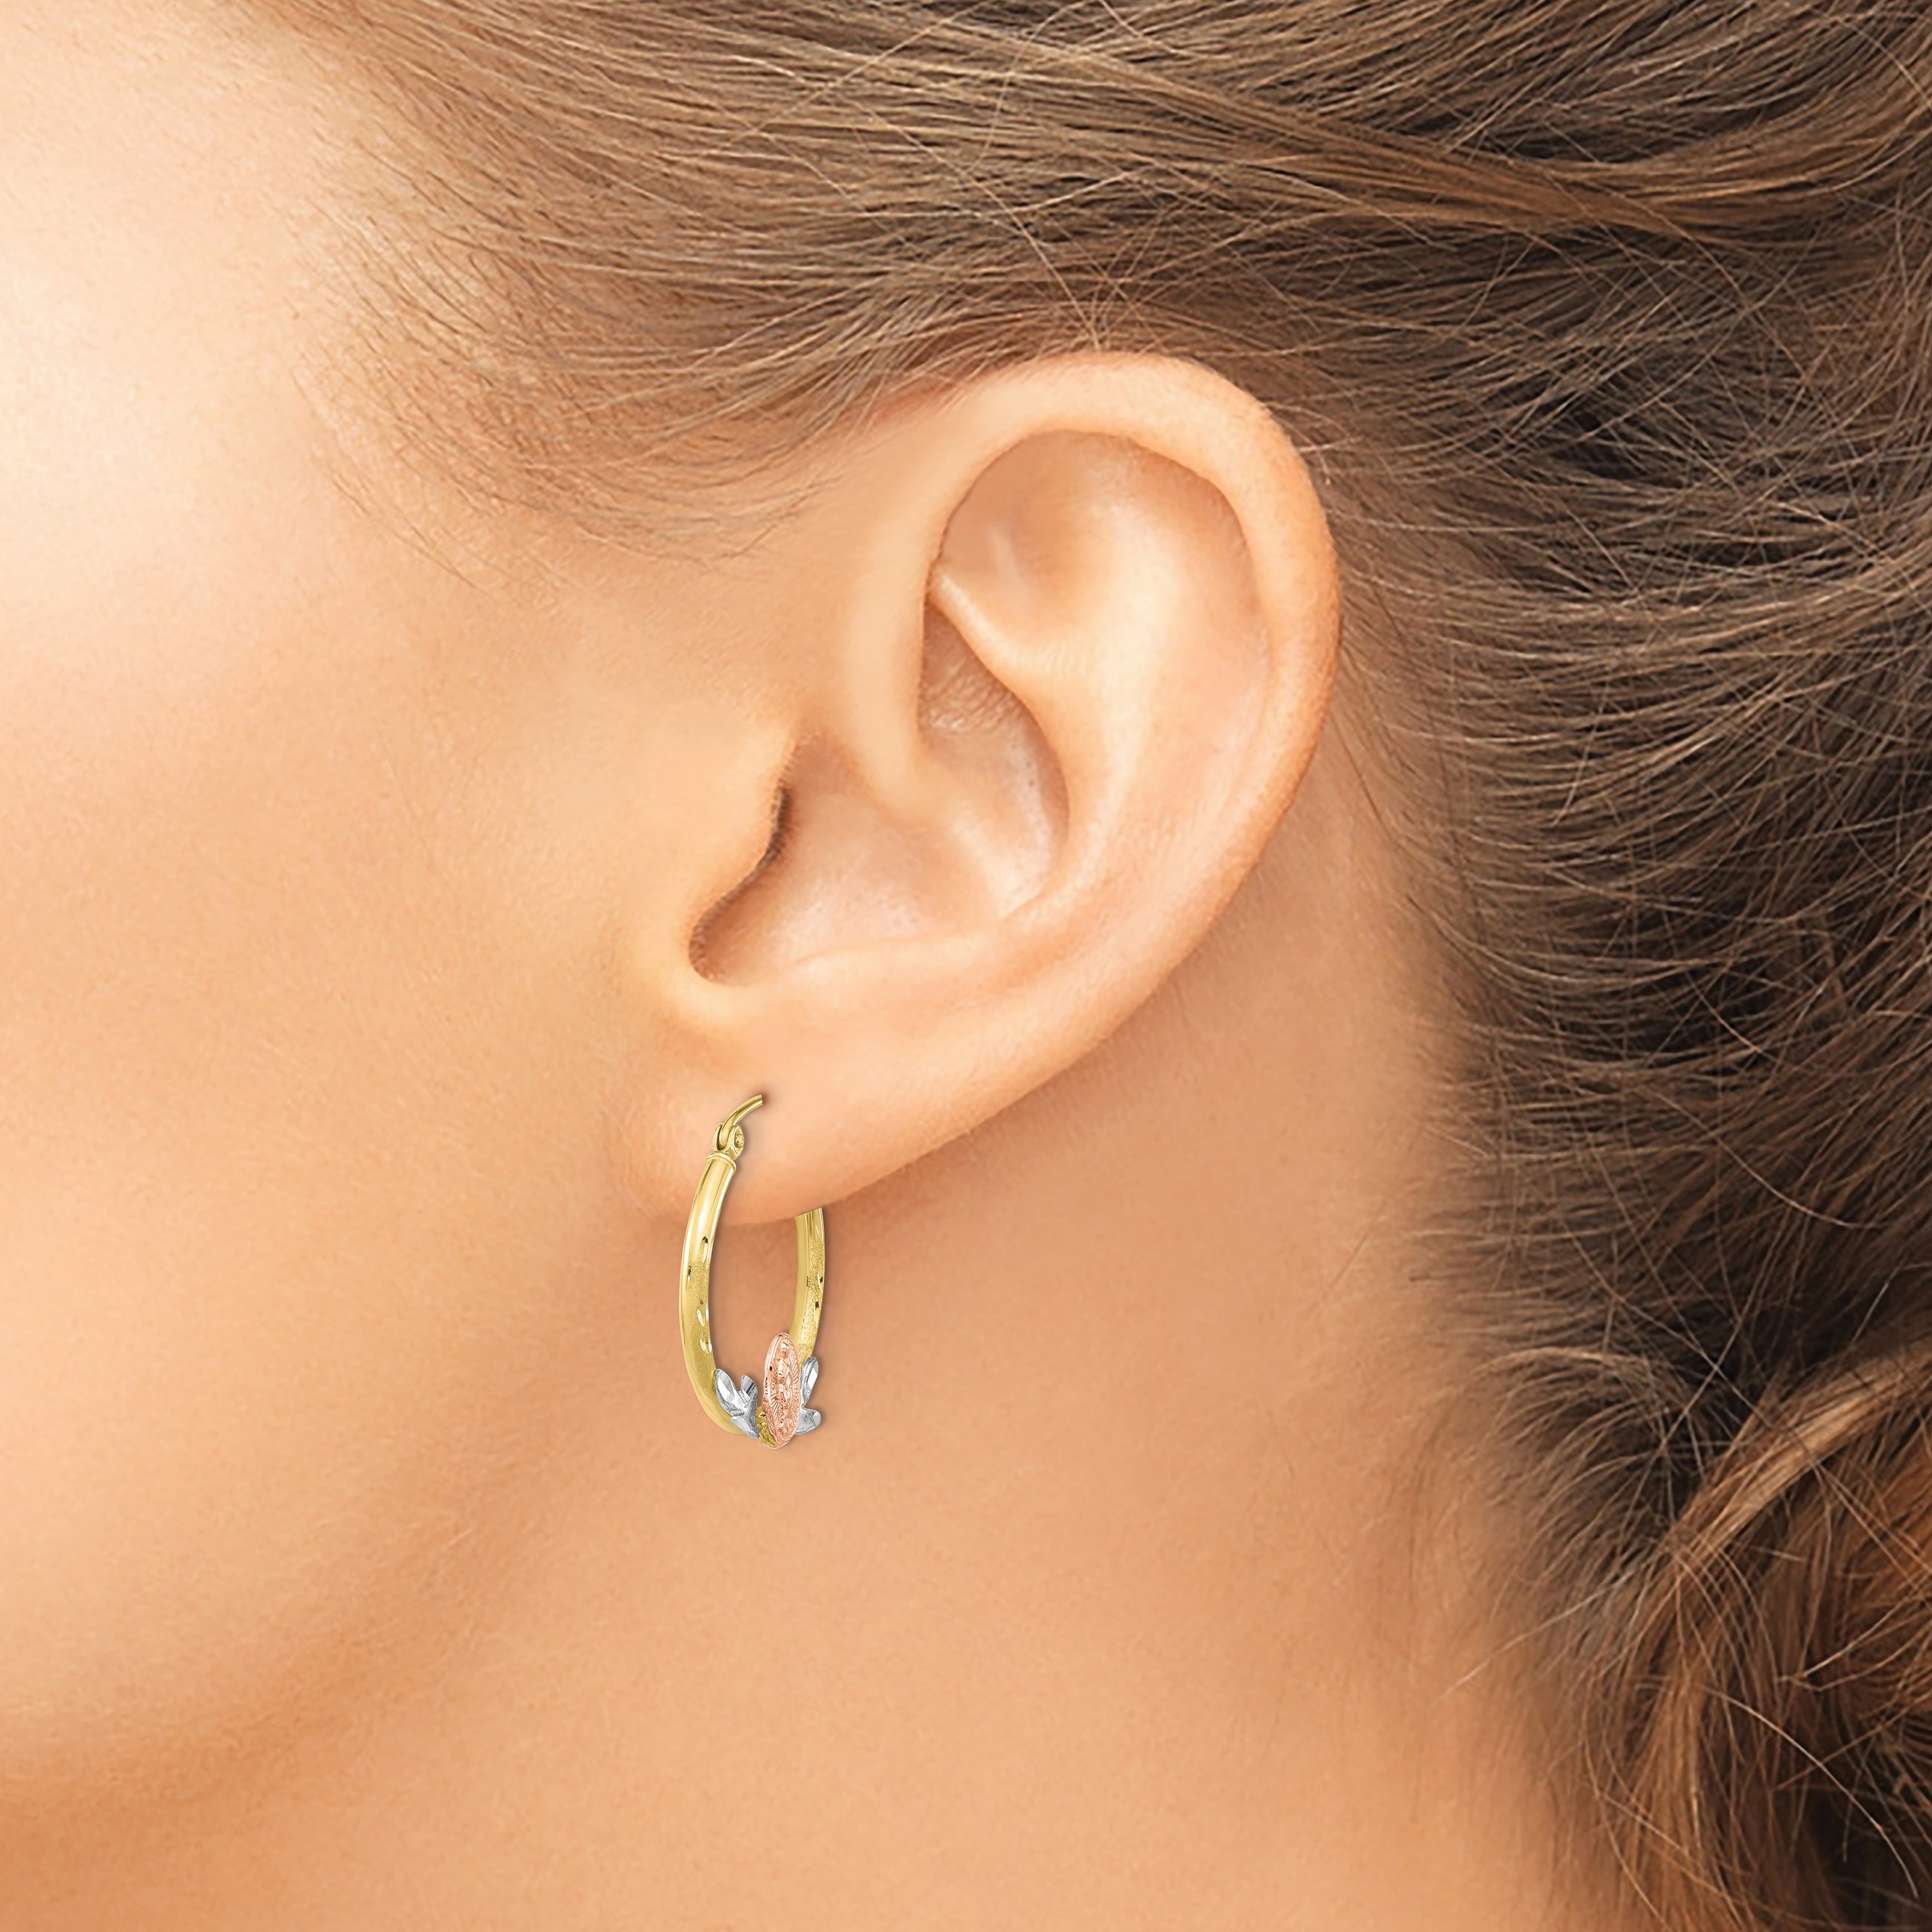 10k Tri-color Guadalupe Hoop Earrings